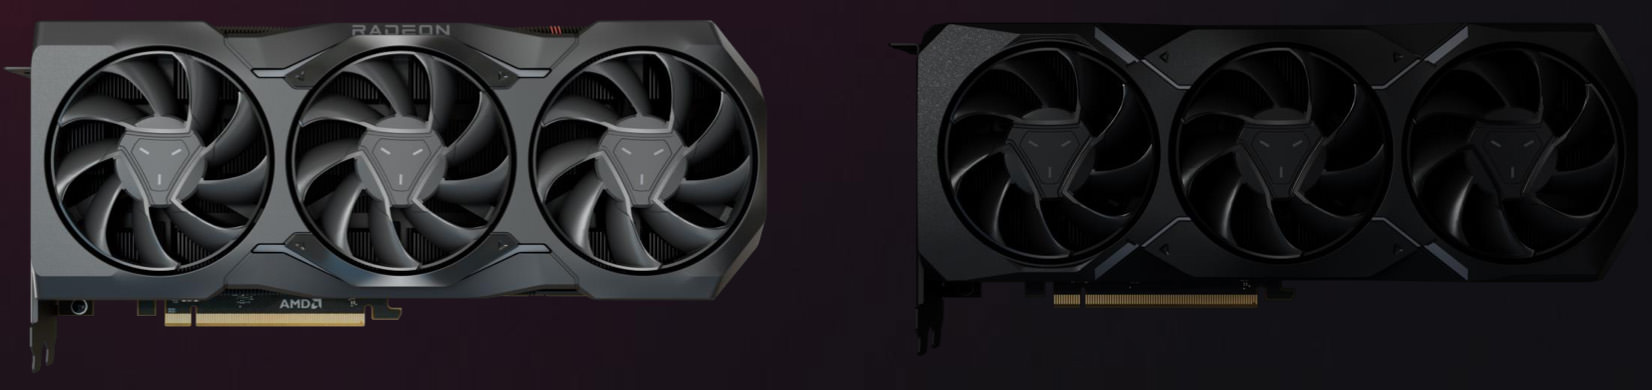 گرافیک AMD RX 7900 XTX و RX 7900 XT از جلو